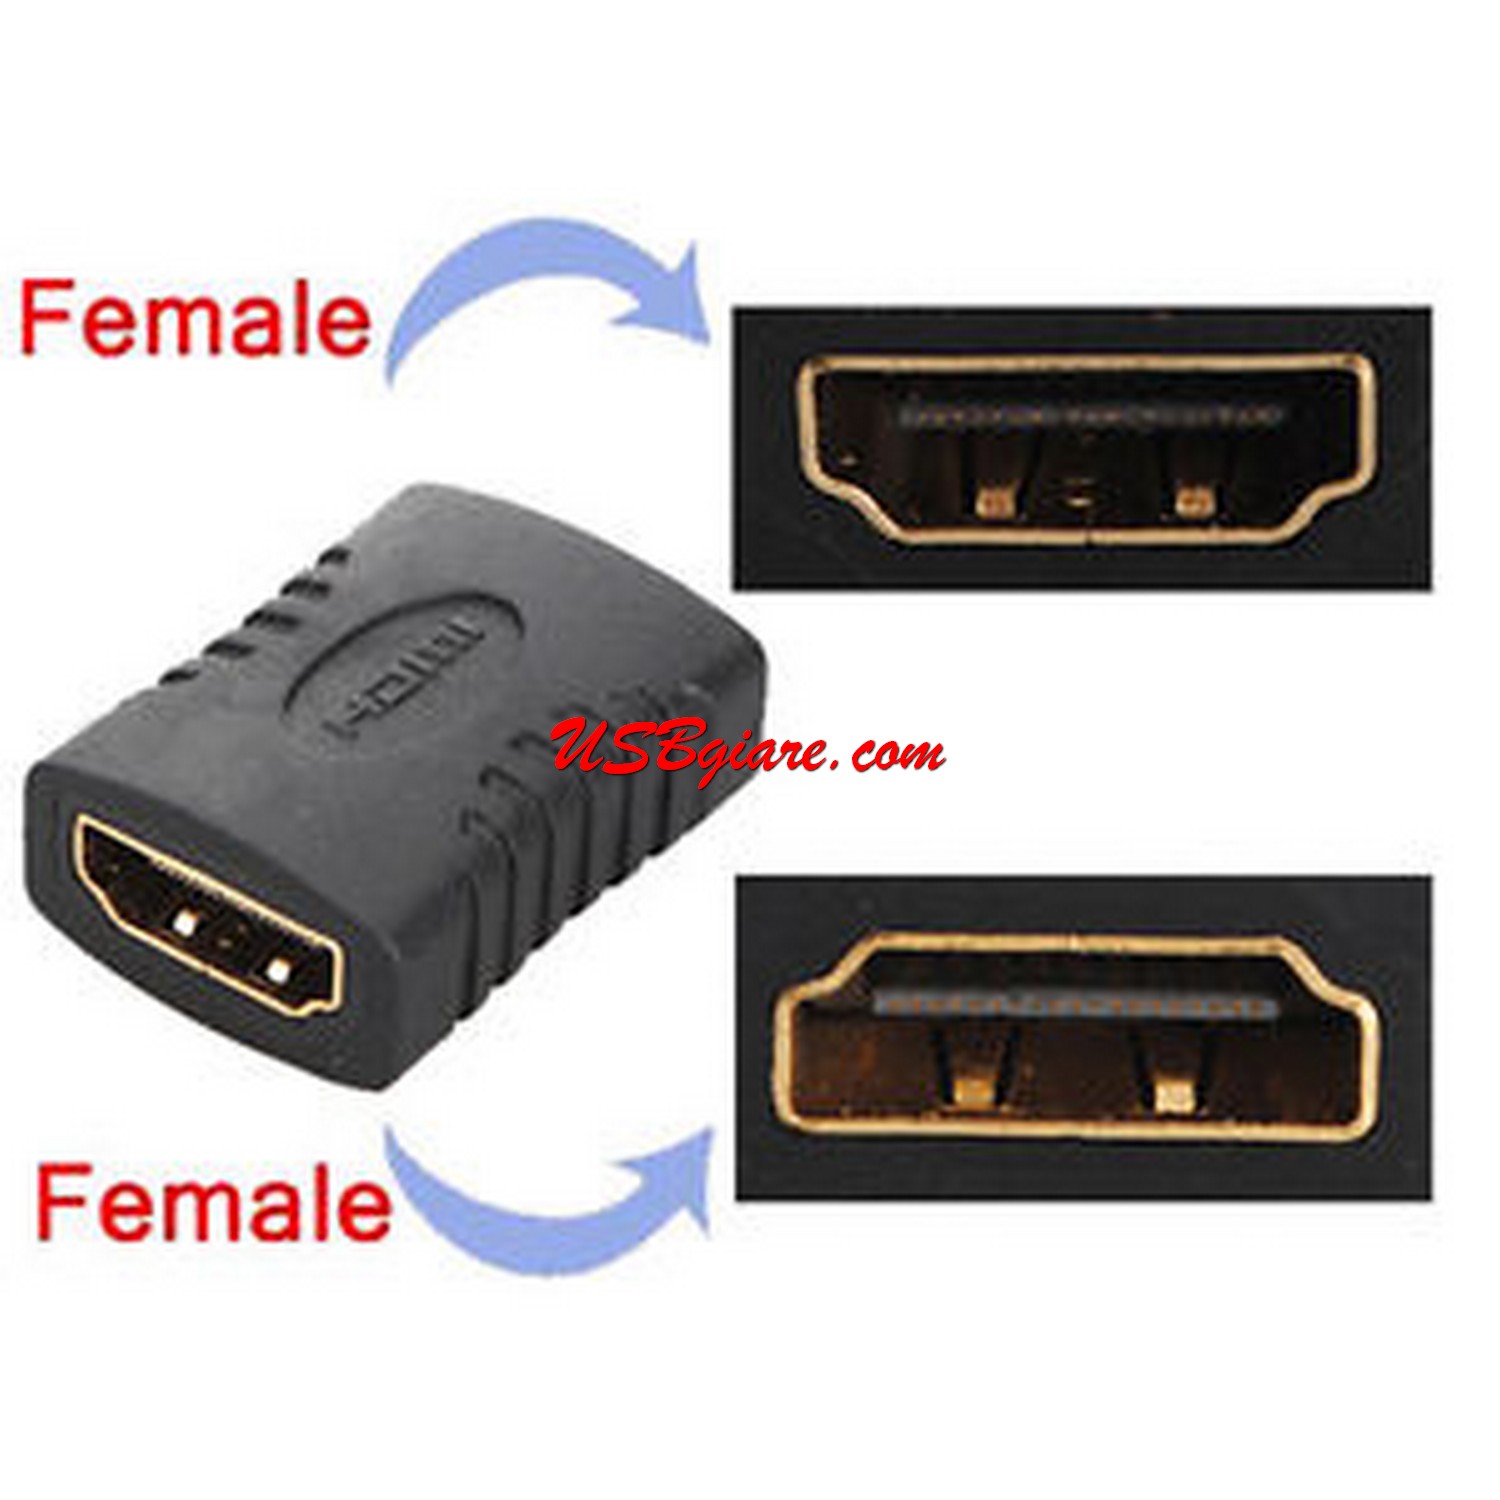 Đầu nối HDMi 2 đầu cái - HDMI Female to Female jack【USBgiareCom】